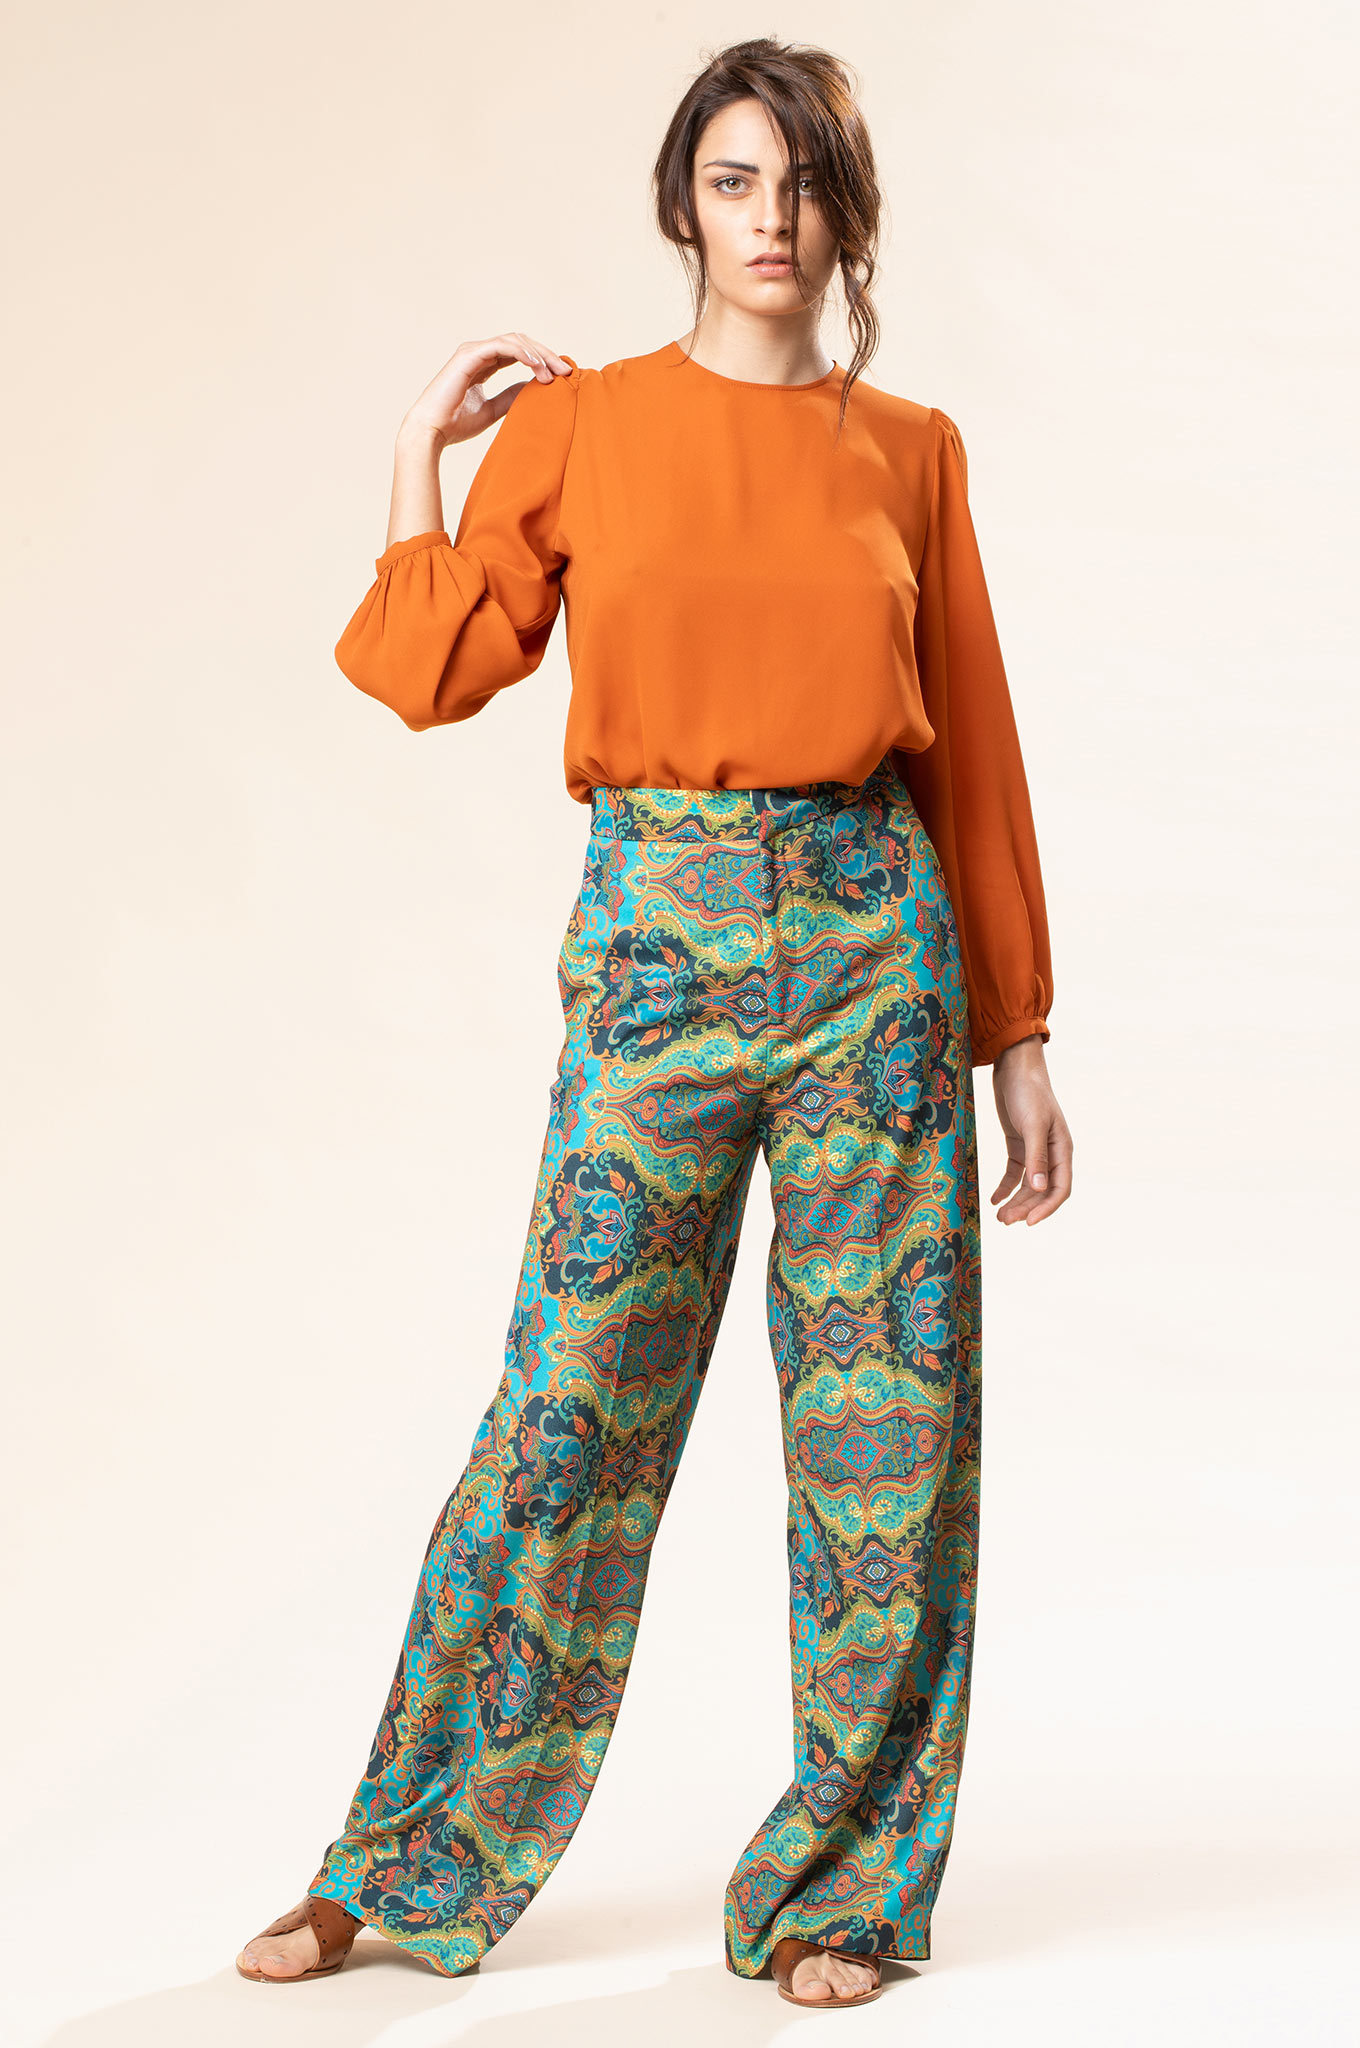 abbigliamento donna primavera 2020 Chiara B: camicia georgette terracotta